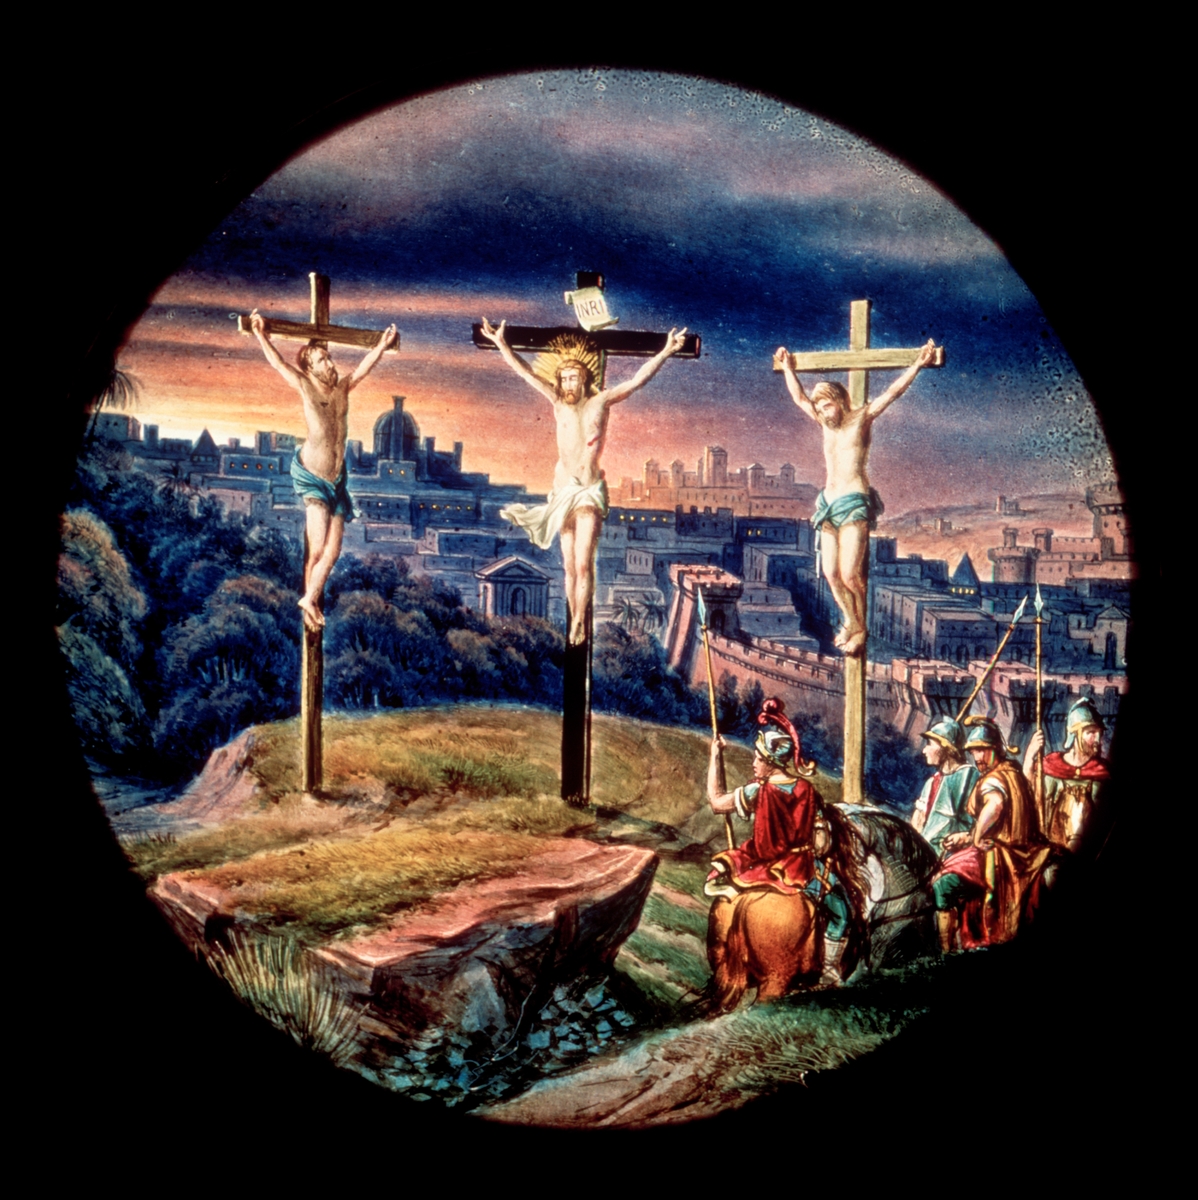 Laterna magica bild.
Handmålad bild på glas. Korsfästelsen i Jerusalem.